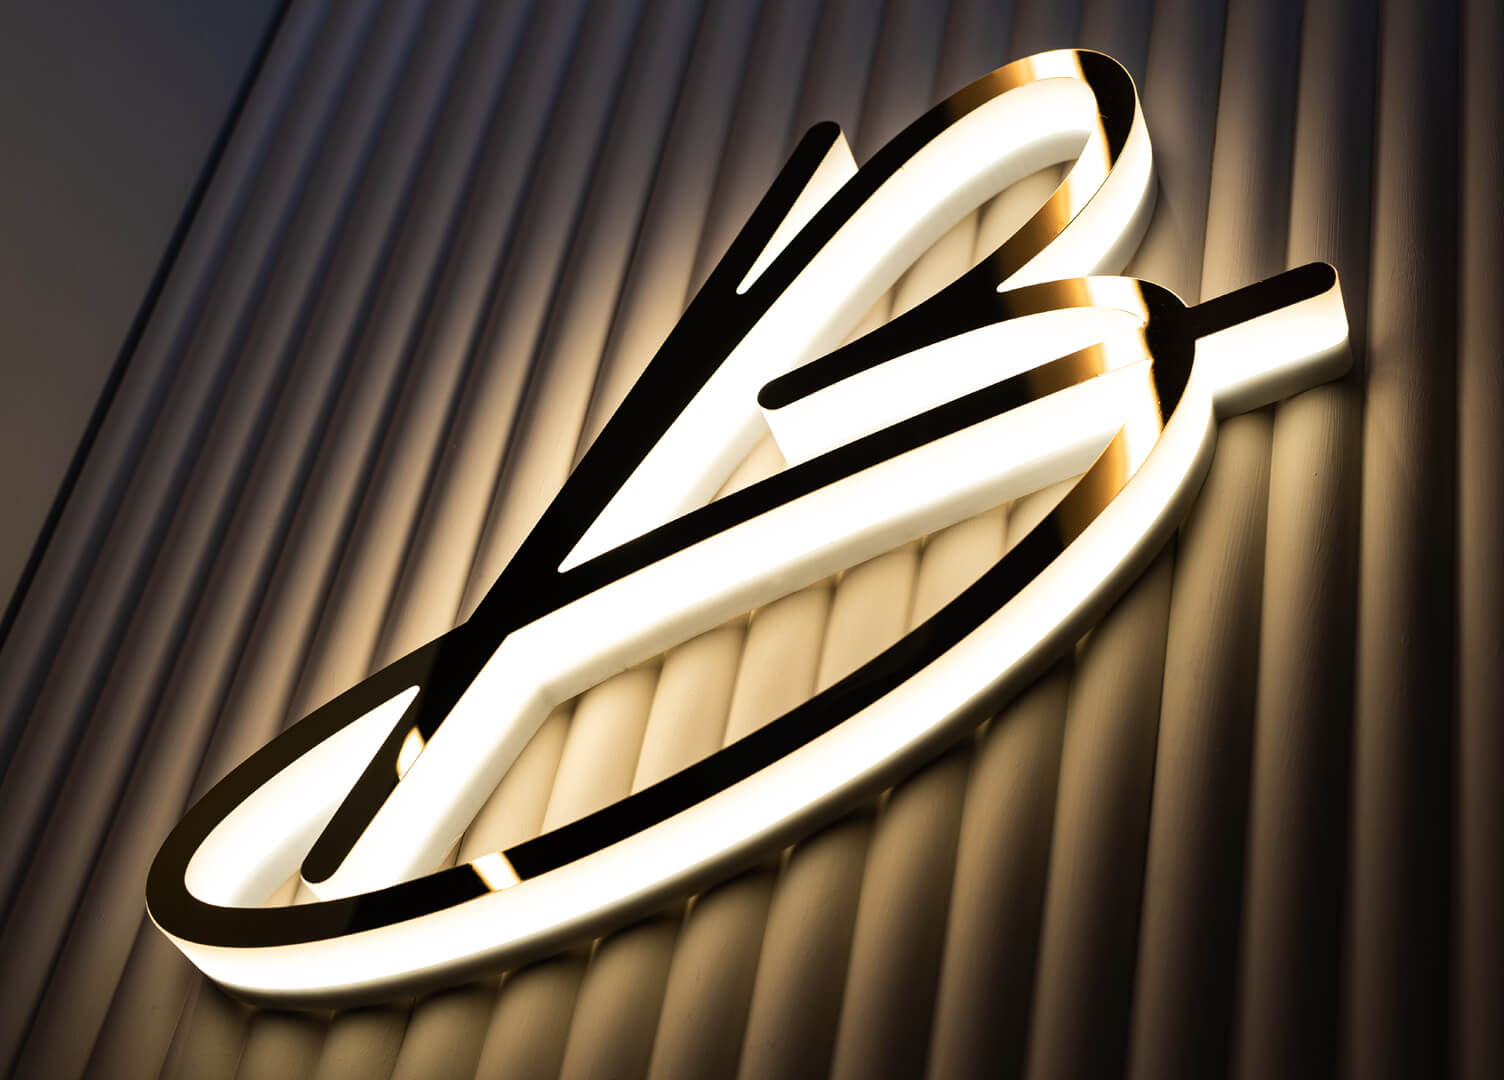 Blushington Buchstabe B - Buchstabe B mit Blushington-Logo in Gold, beleuchtet entlang der LED-Kontur